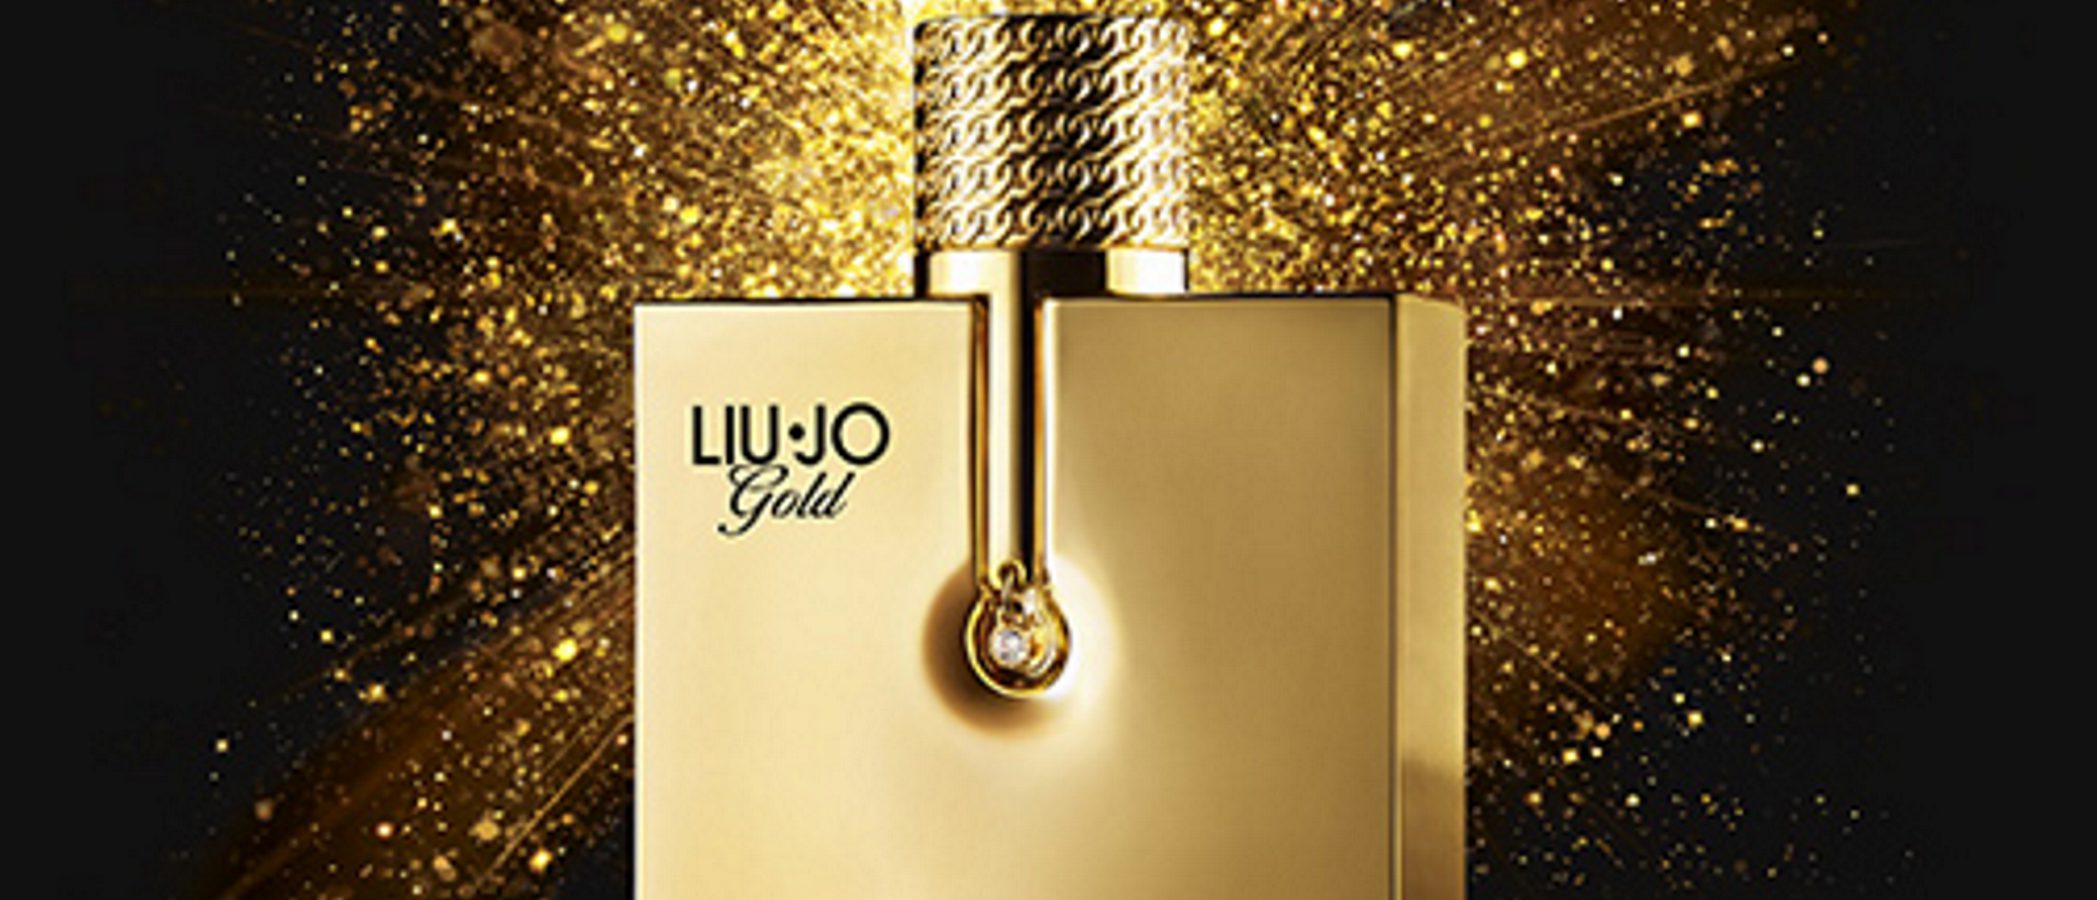 Liu Jo presenta su nueva fragancia Liu Jo Gold para este otoño